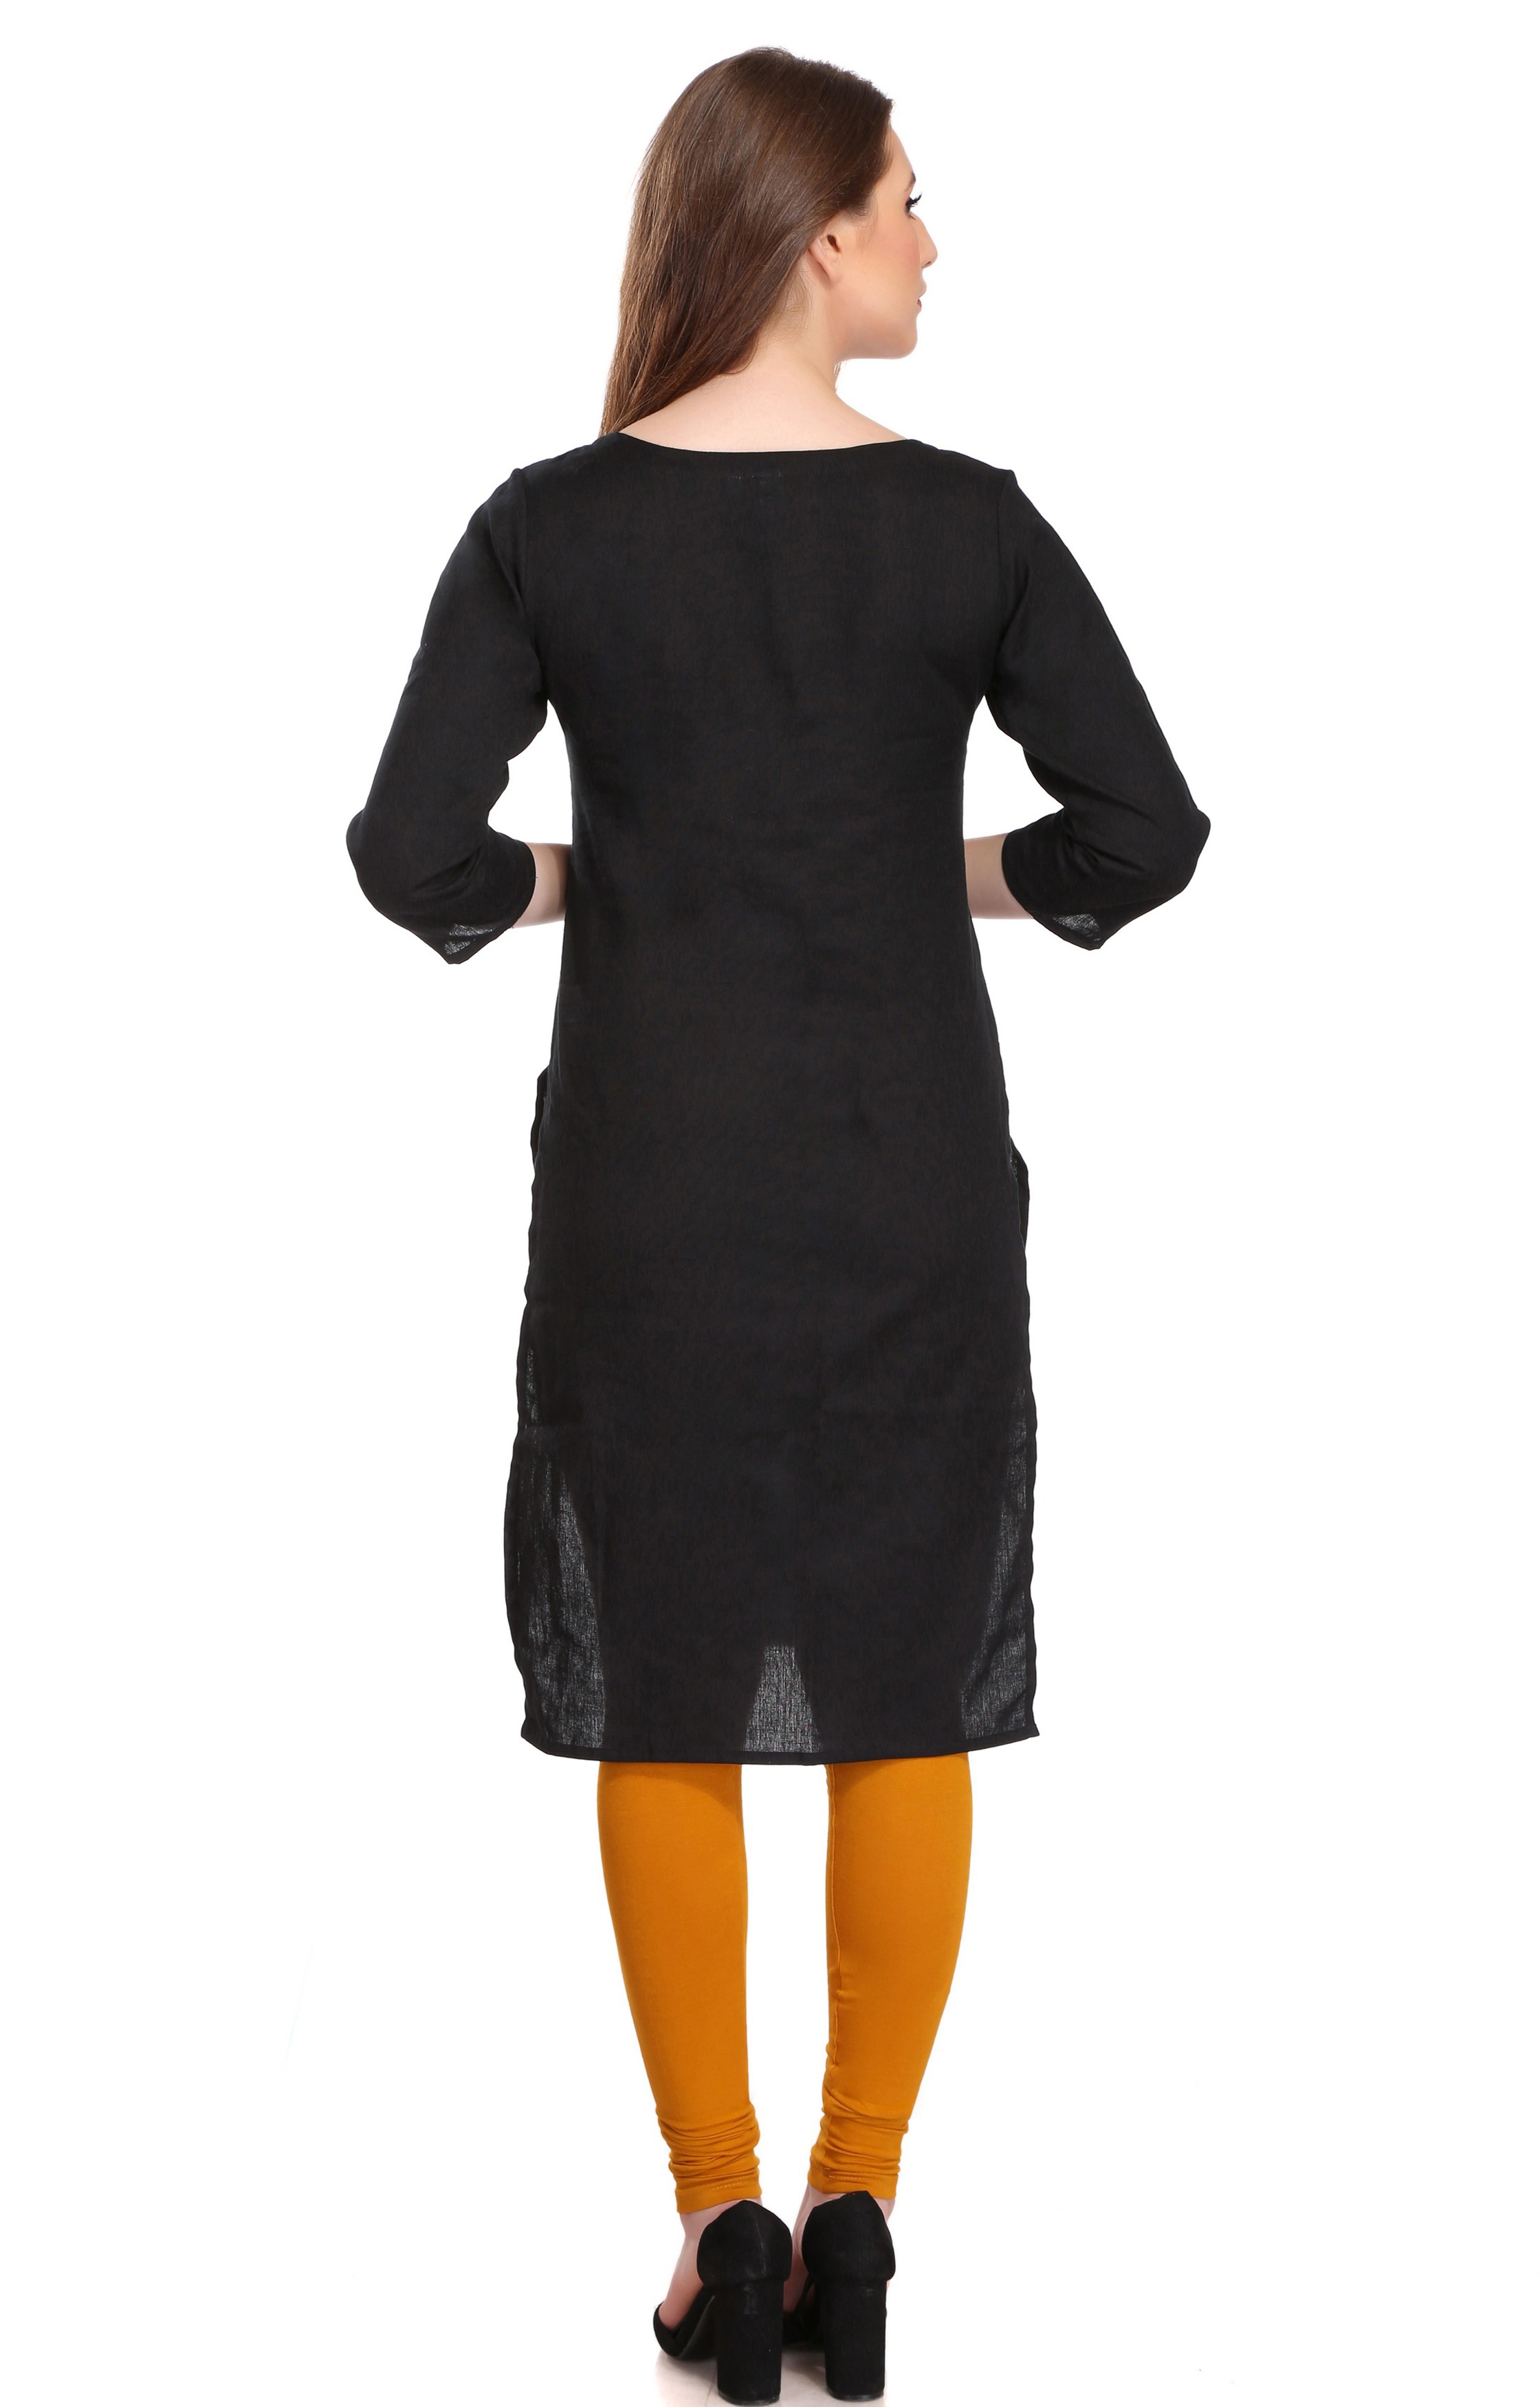 Colorfit | Colorfit Cotton Lycra Churidar Length Leggings for Women 2